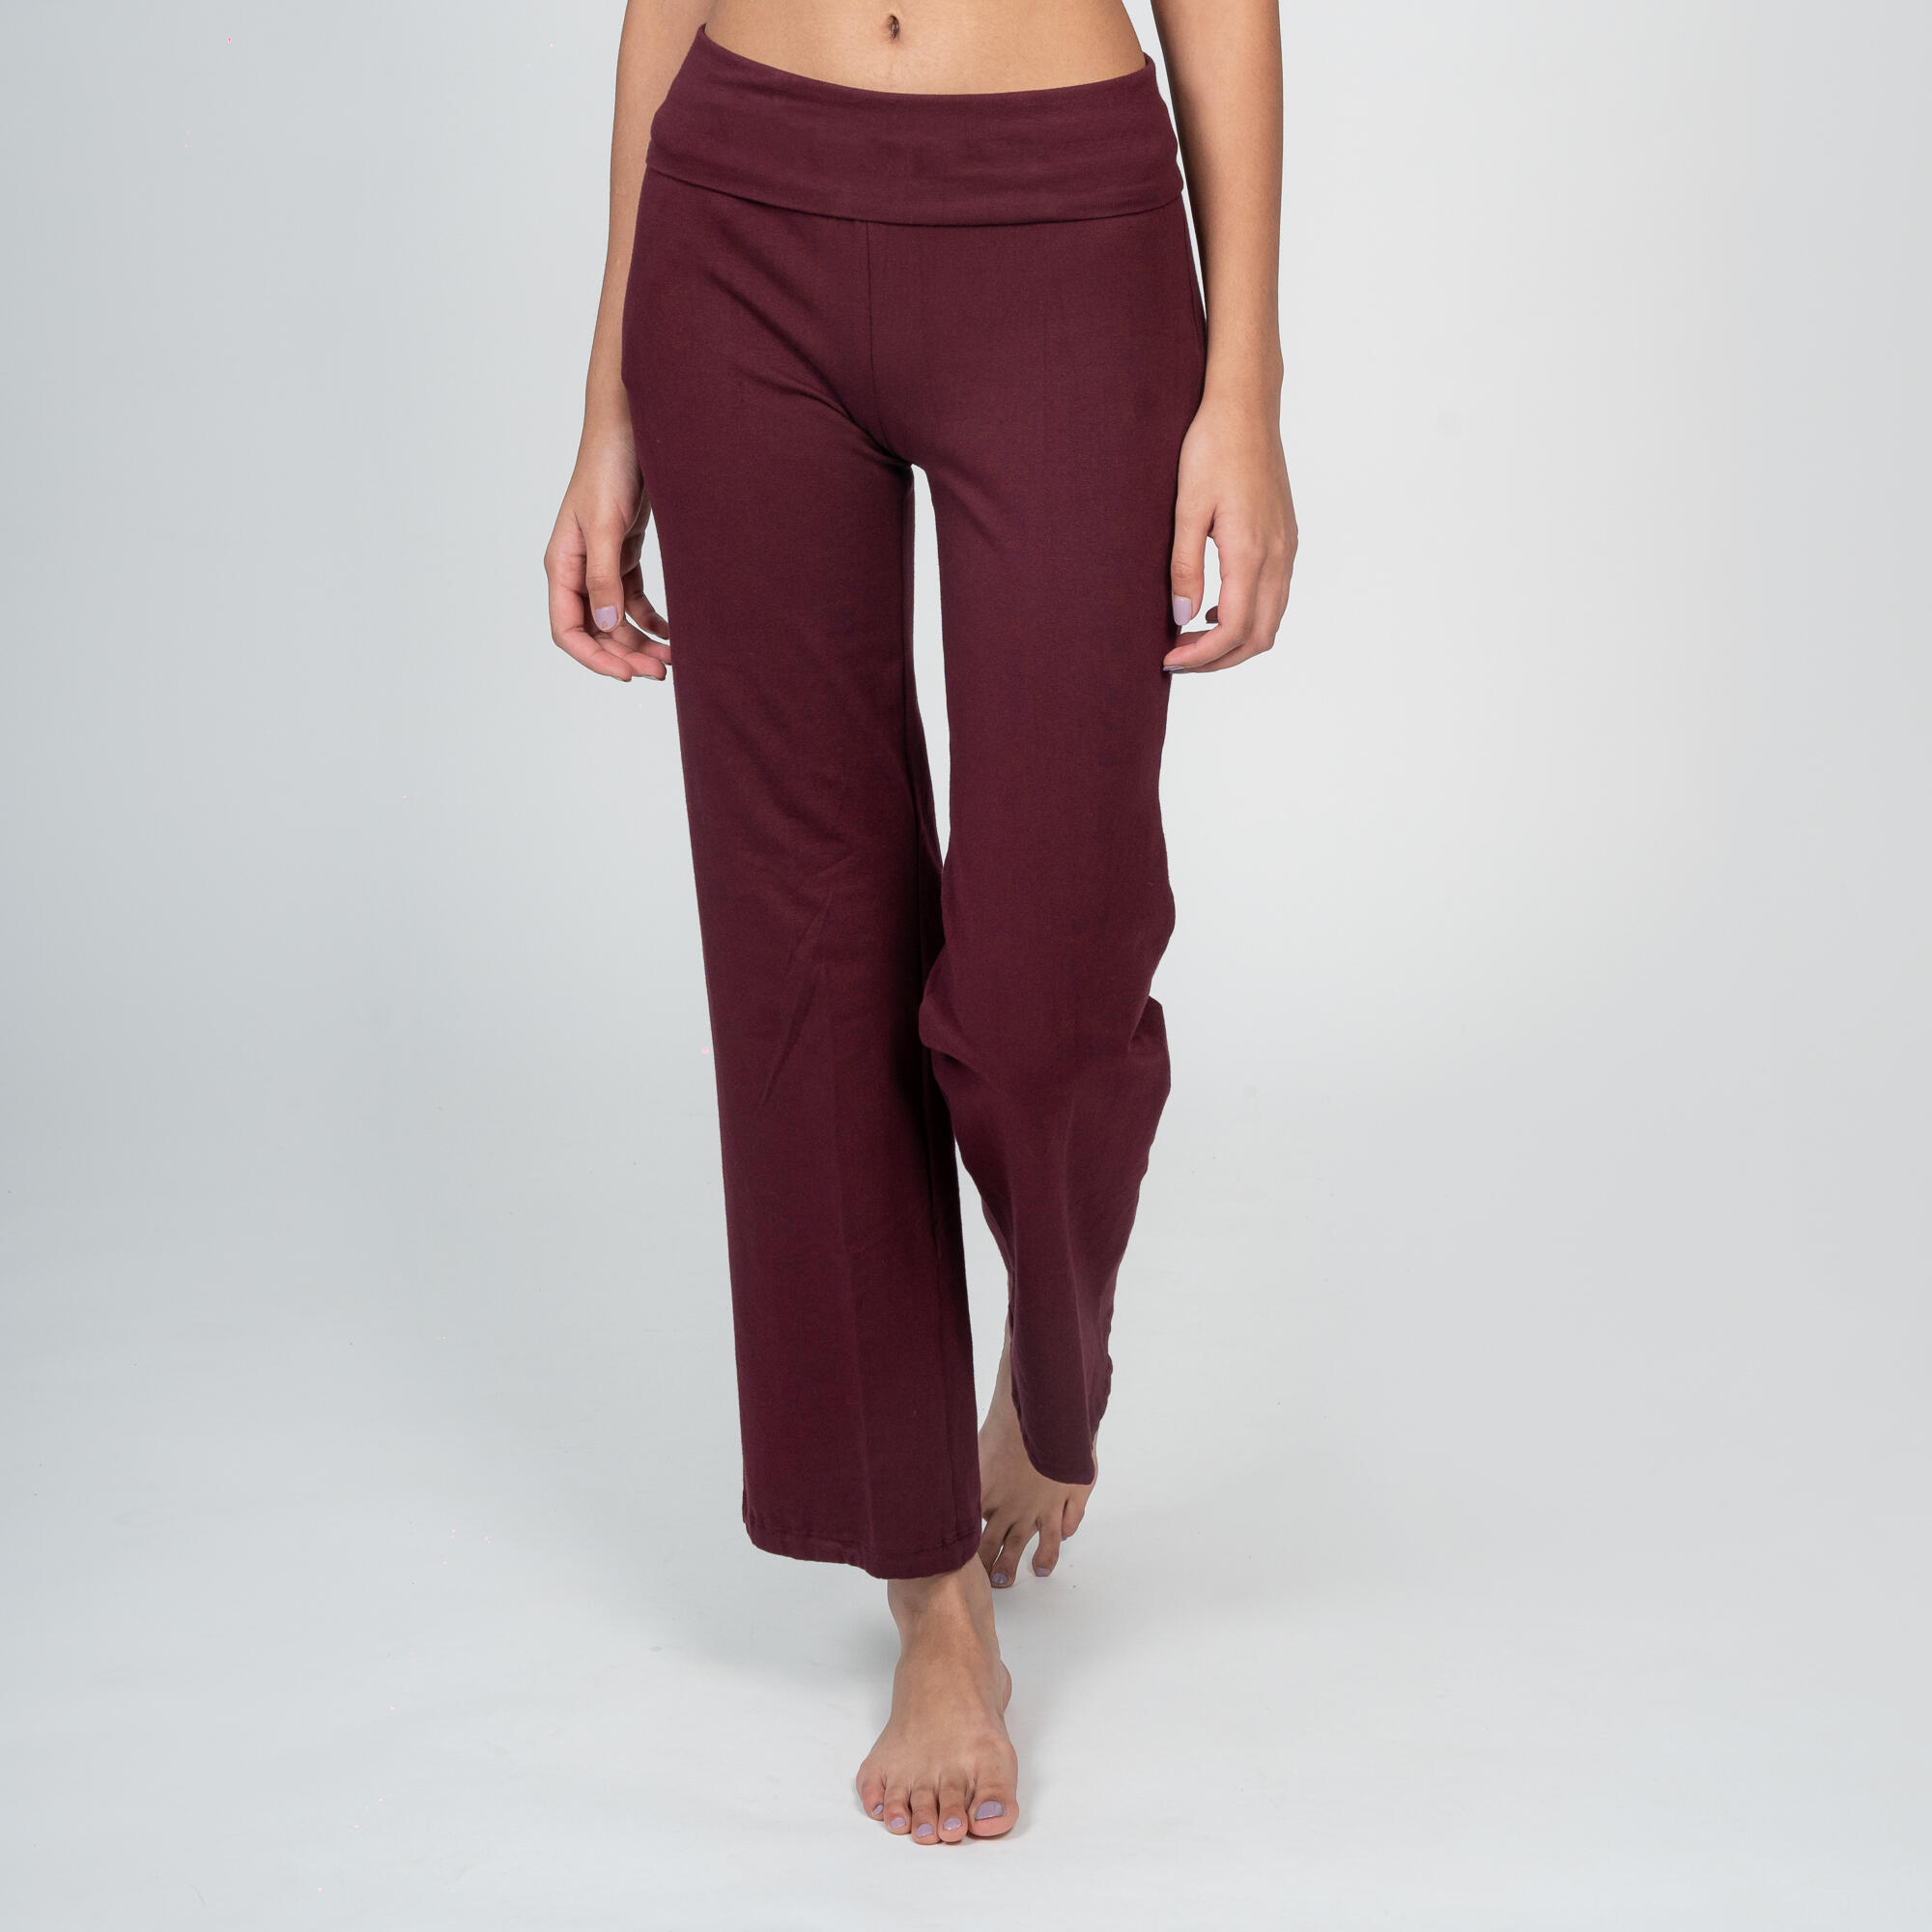 Organic Cotton Pants Yoga Leggings Womens Jogger Pants Tights Capri   Satva Living